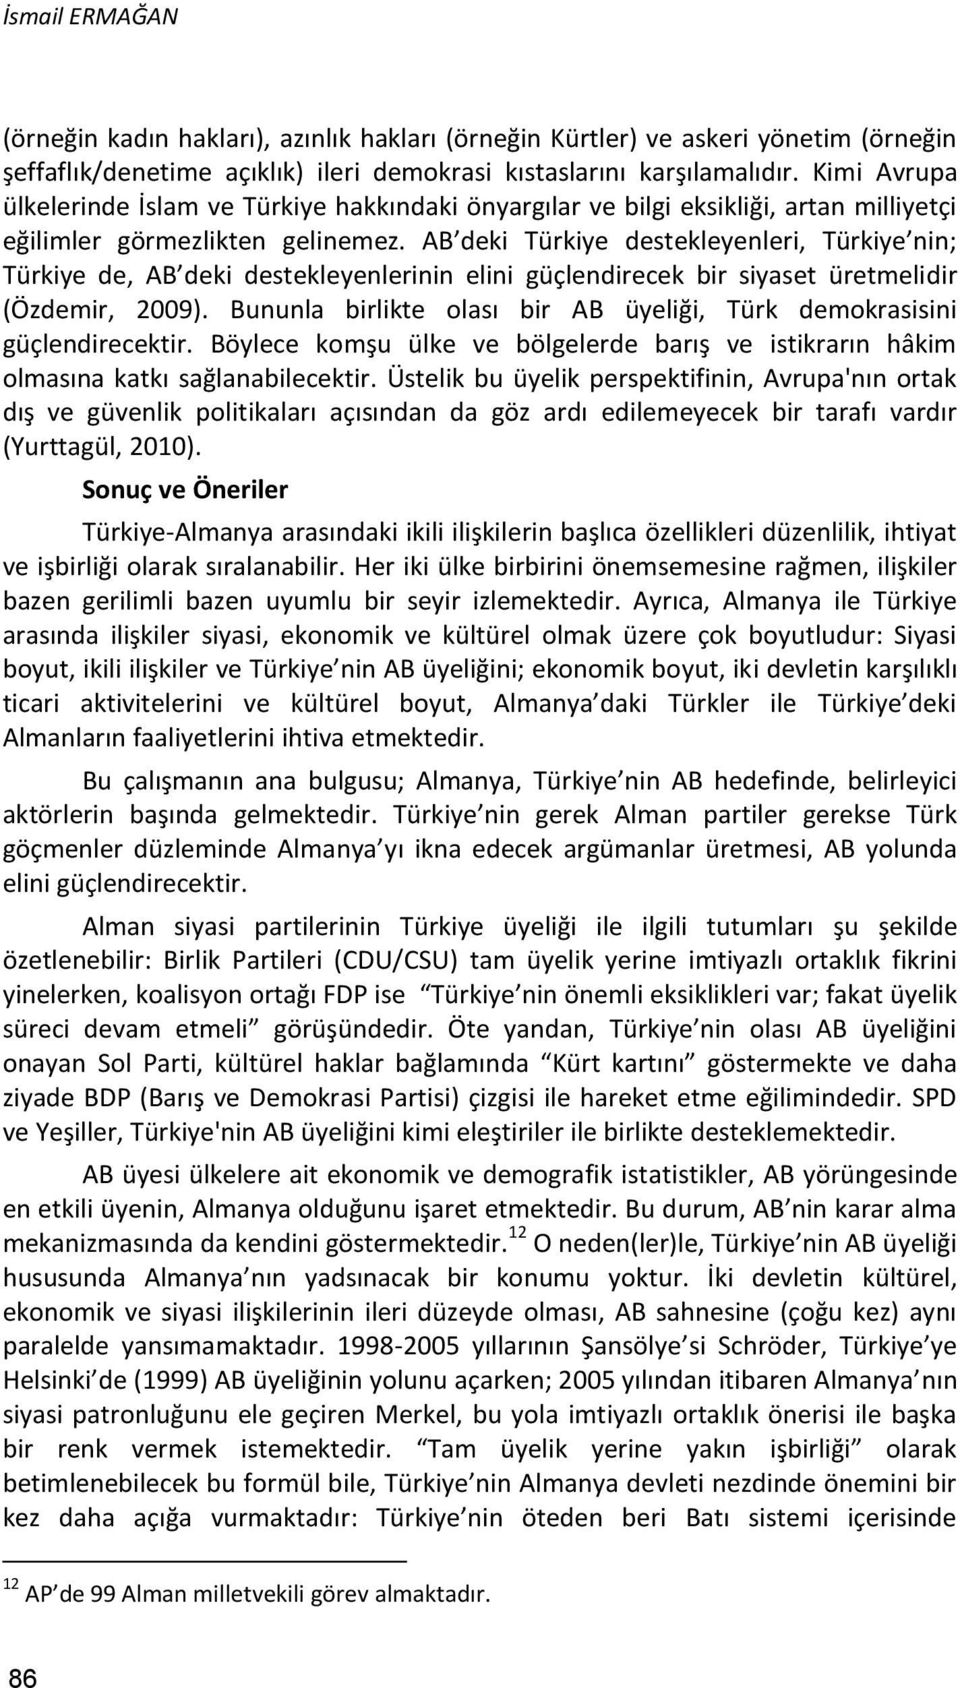 AB deki Türkiye destekleyenleri, Türkiye nin; Türkiye de, AB deki destekleyenlerinin elini güçlendirecek bir siyaset üretmelidir (Özdemir, 2009).